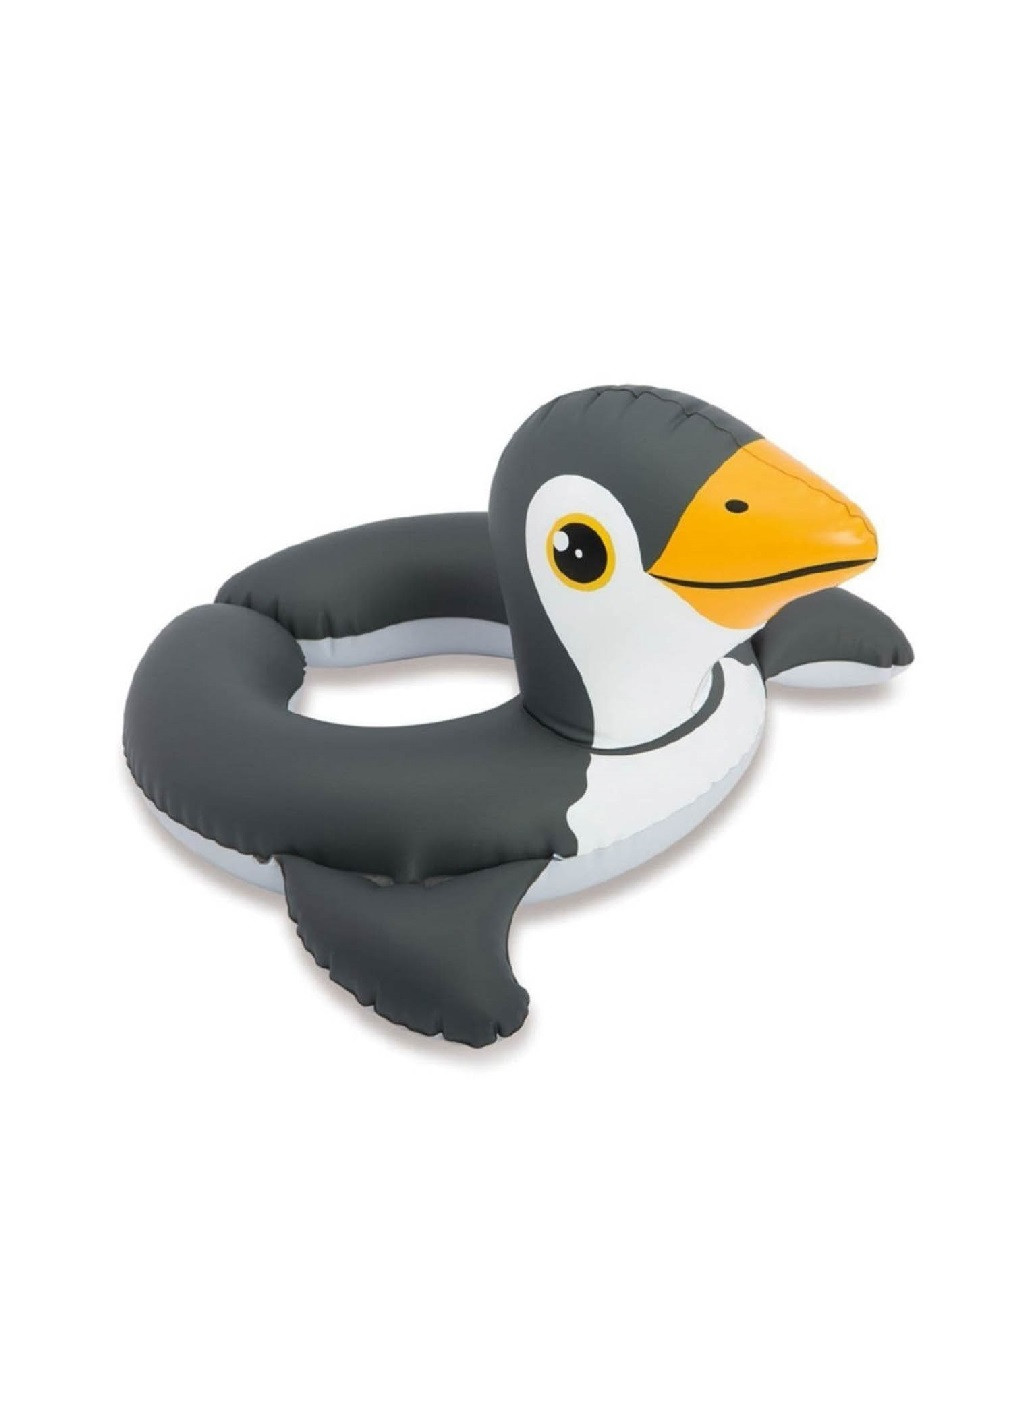 Надувний пляжний дитячий одномісний безрозмірний круг для дітей 3-6 років 64 х 64 см (474515-Prob) Пінгвін Unbranded (258630799)